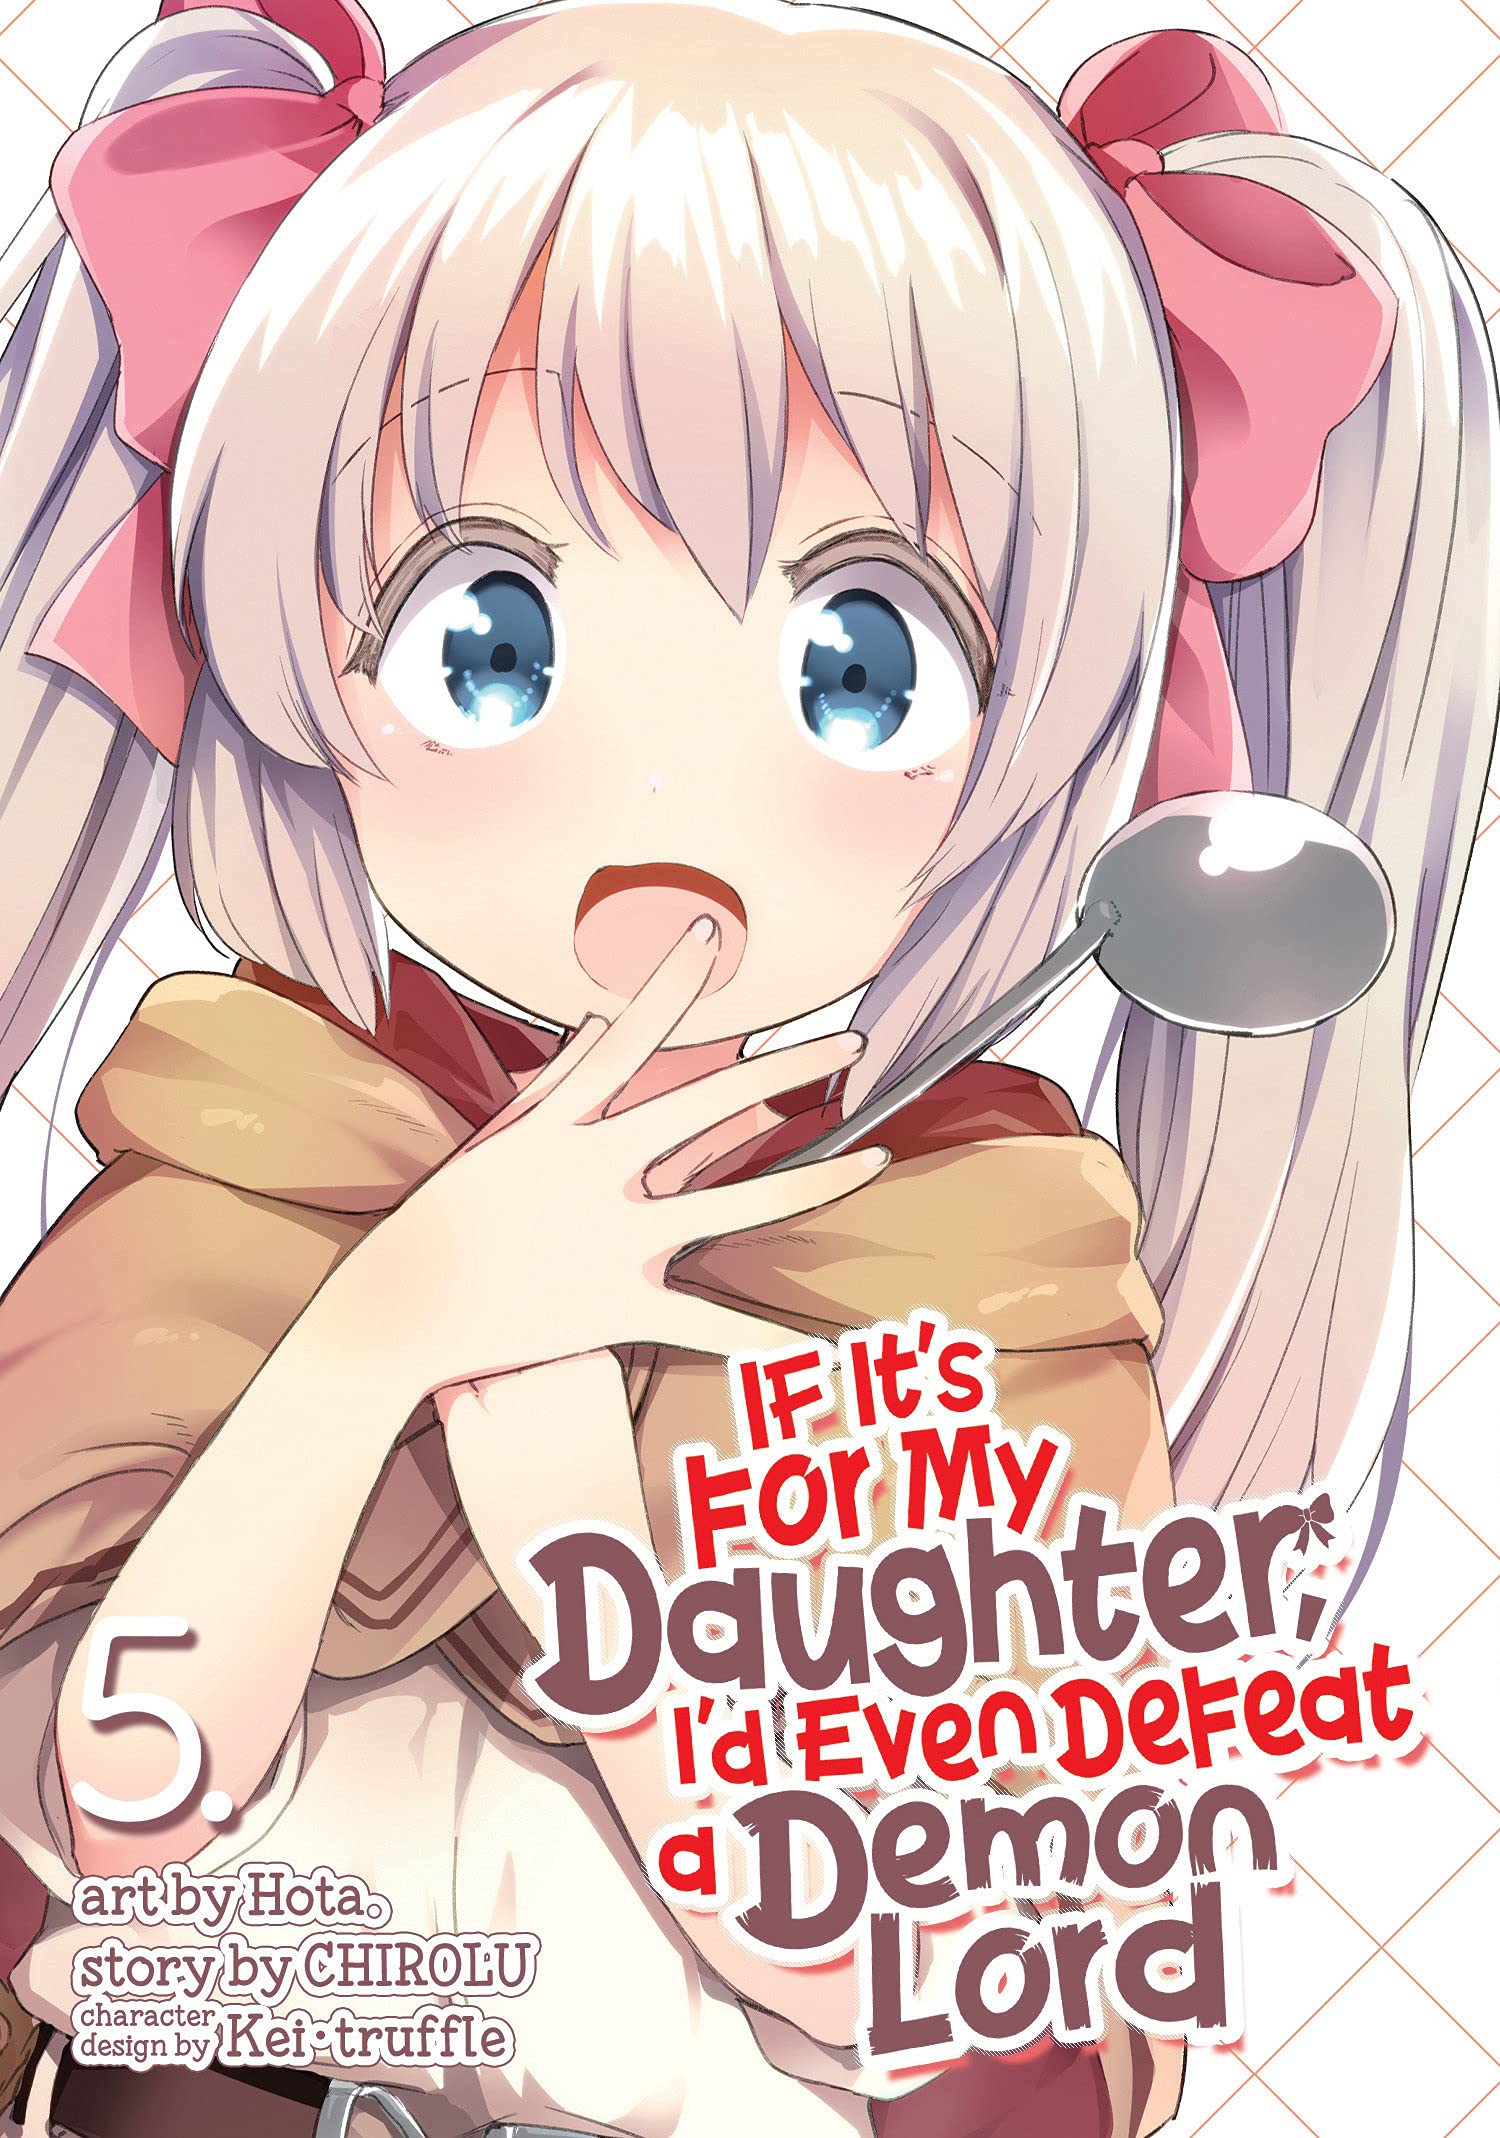 Mua If It's for My Daughter, I'd Even Defeat a Demon Lord (Manga) Vol. 5  trên Amazon Mỹ chính hãng 2023 | Fado